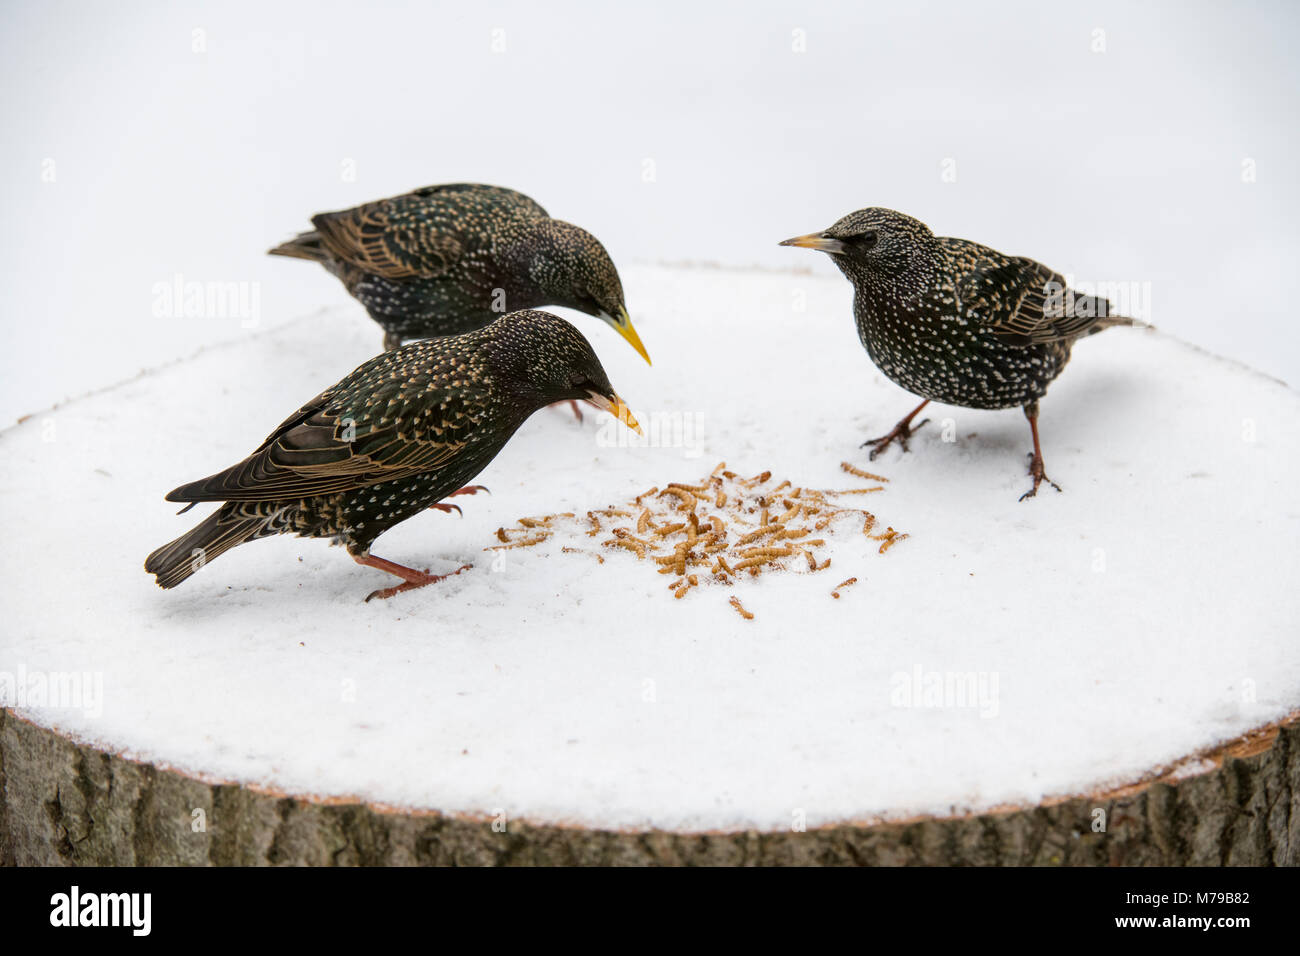 Sturnus vulgaris. Les étourneaux se nourrit de vers de farine sur un arbre en bois table d'oiseaux dans la neige dans un jardin anglais. Février, UK Banque D'Images